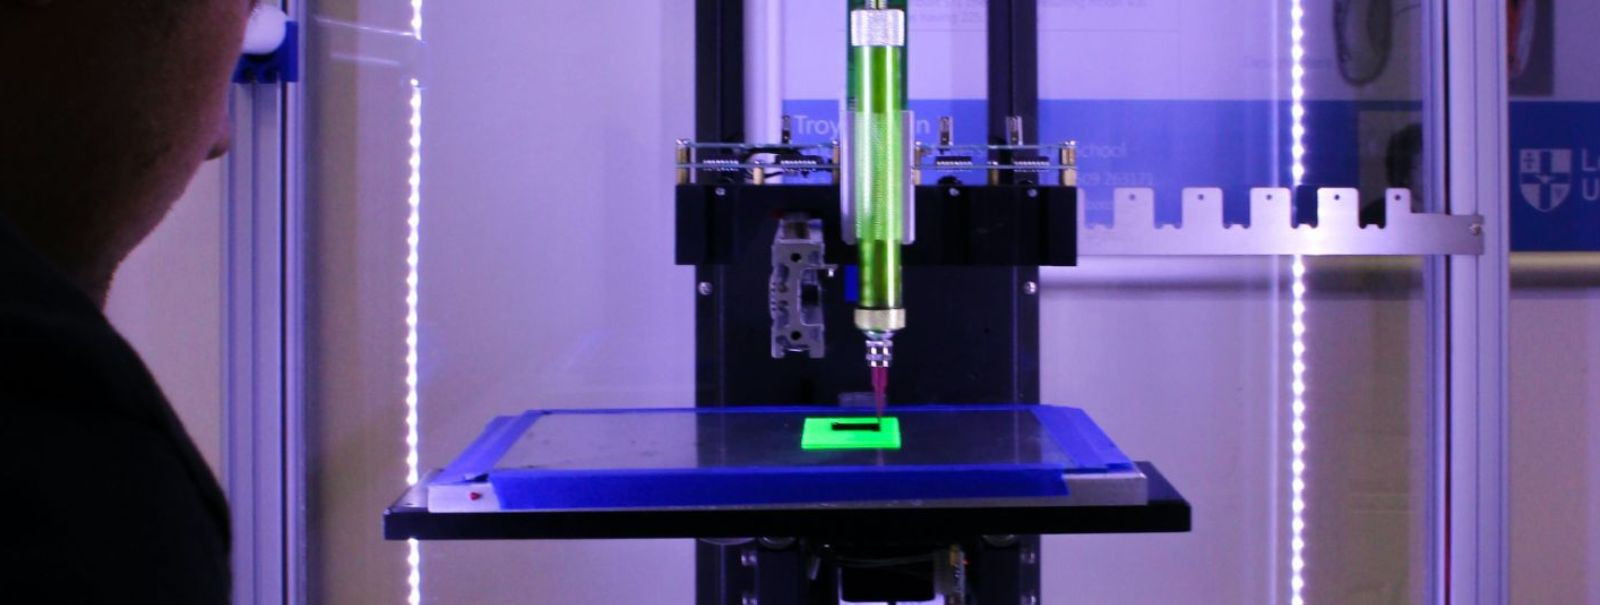 3D-printimine on tänapäeval laialt levinud tehnoloogia, mis võimaldab toota füüsilisi objekte digitaalse disaini põhjal. CNC Stuudio pakub ka 3D-printimise teen